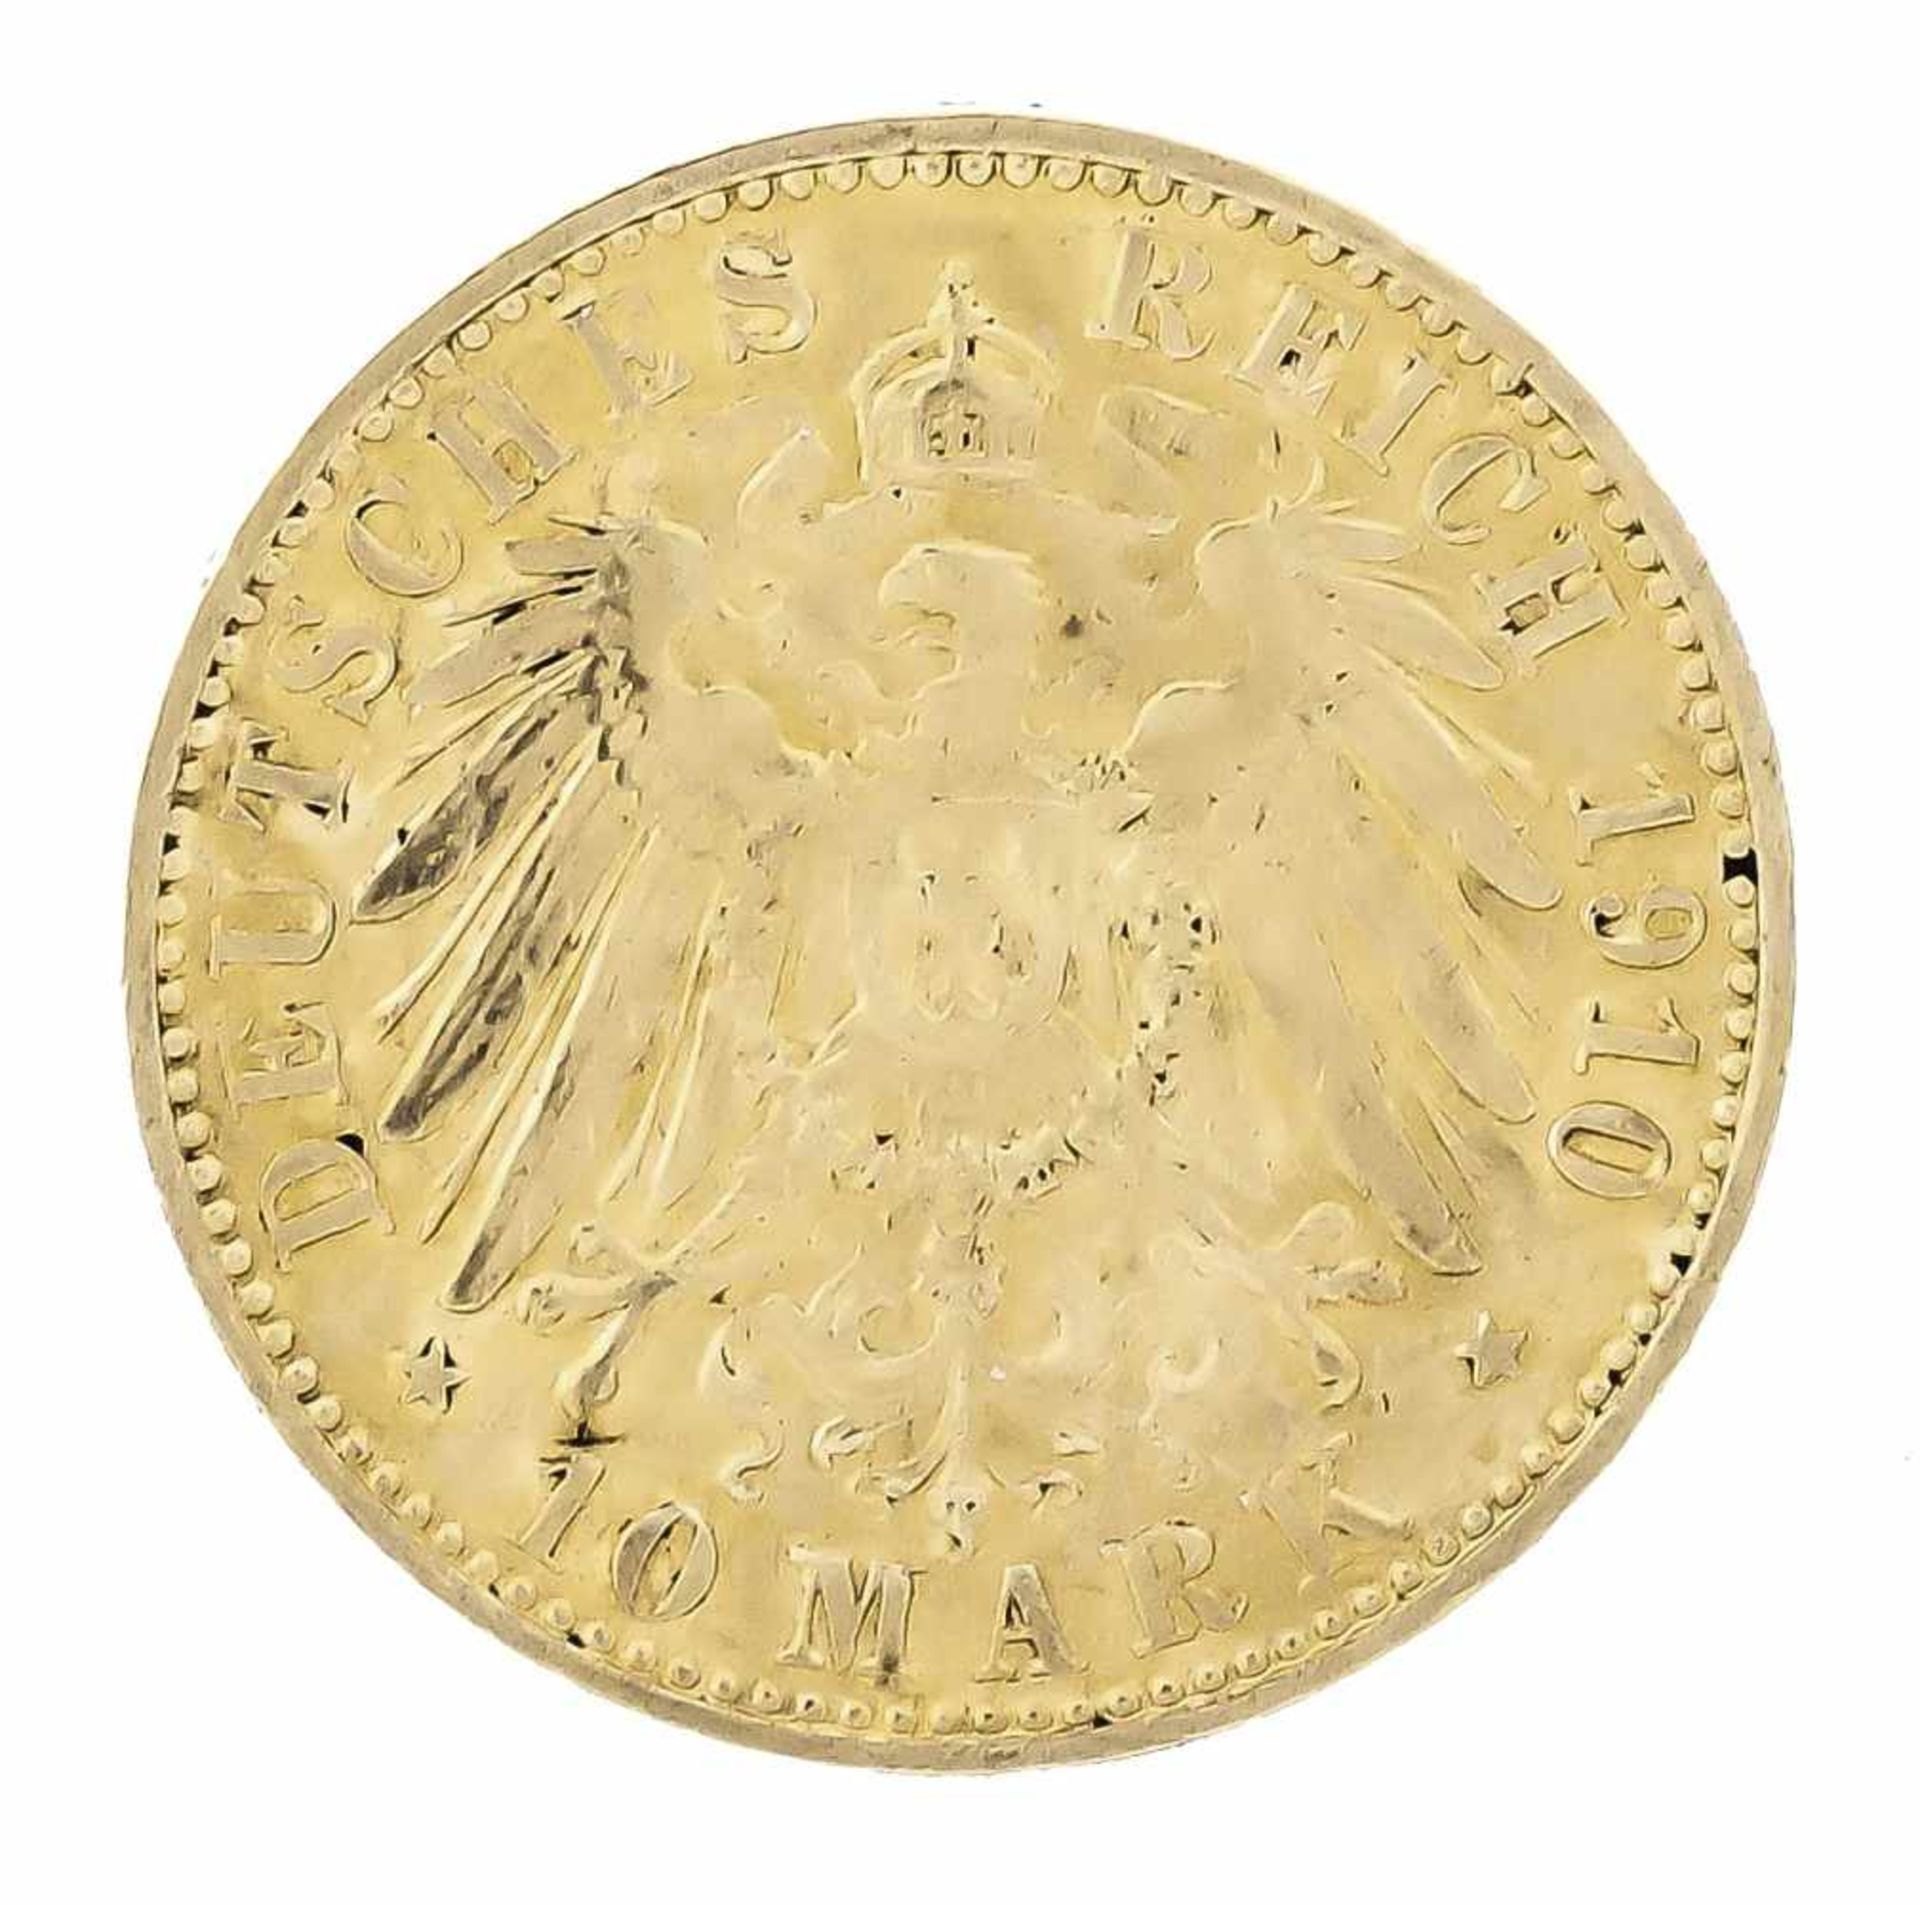 10 Mark, Preußen, Wilhelm II. Deutscher Kaiser König von Preußen, 1910 A, in vz - Bild 2 aus 2